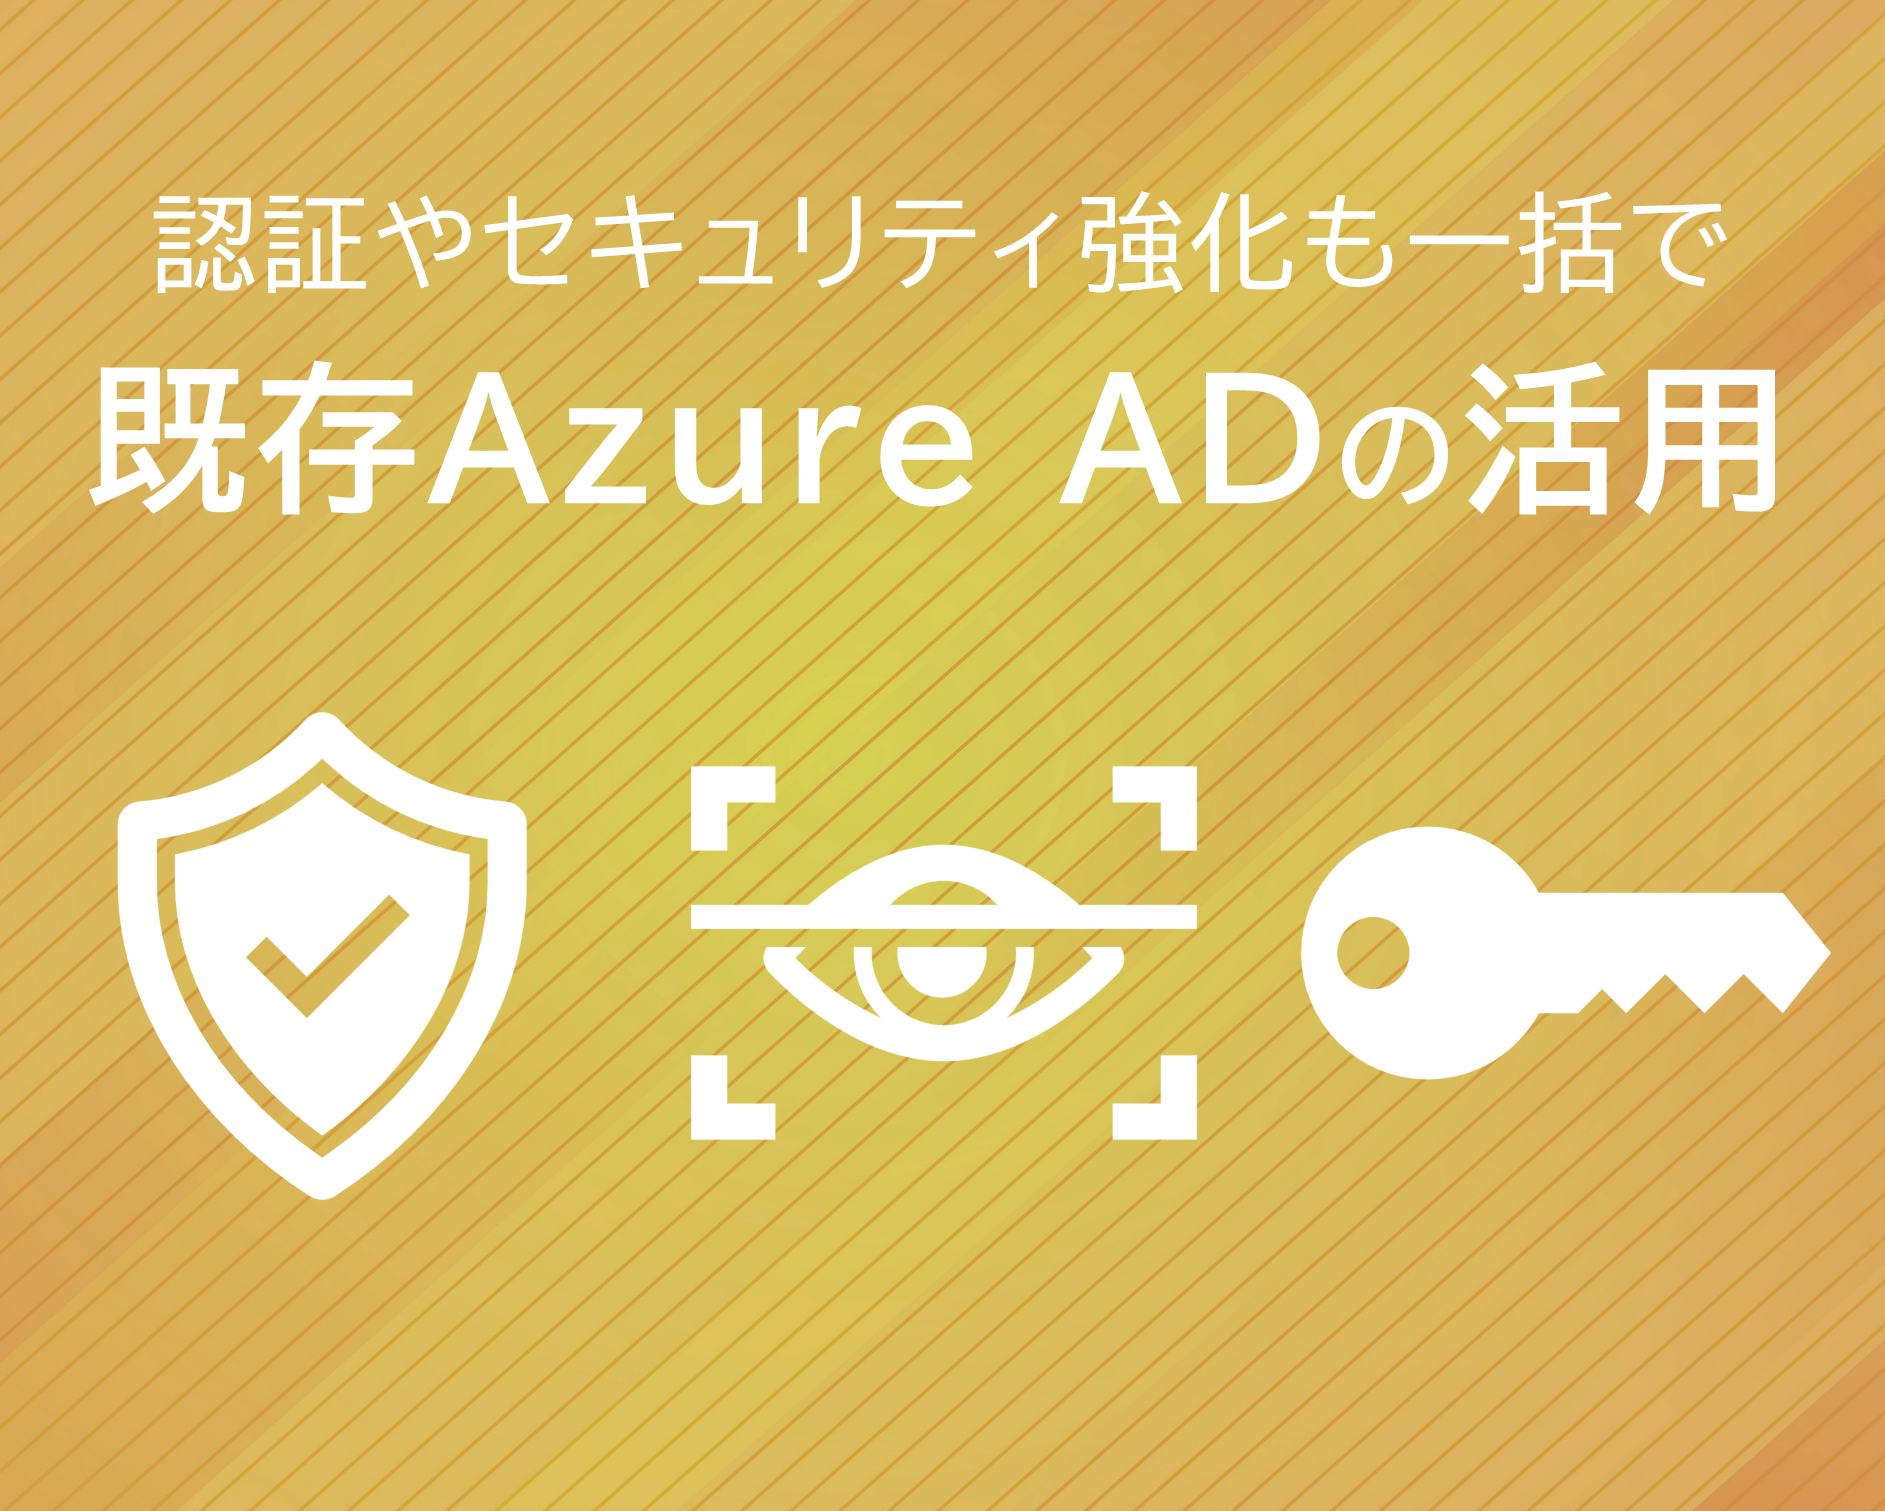 既存Azure ADを活用